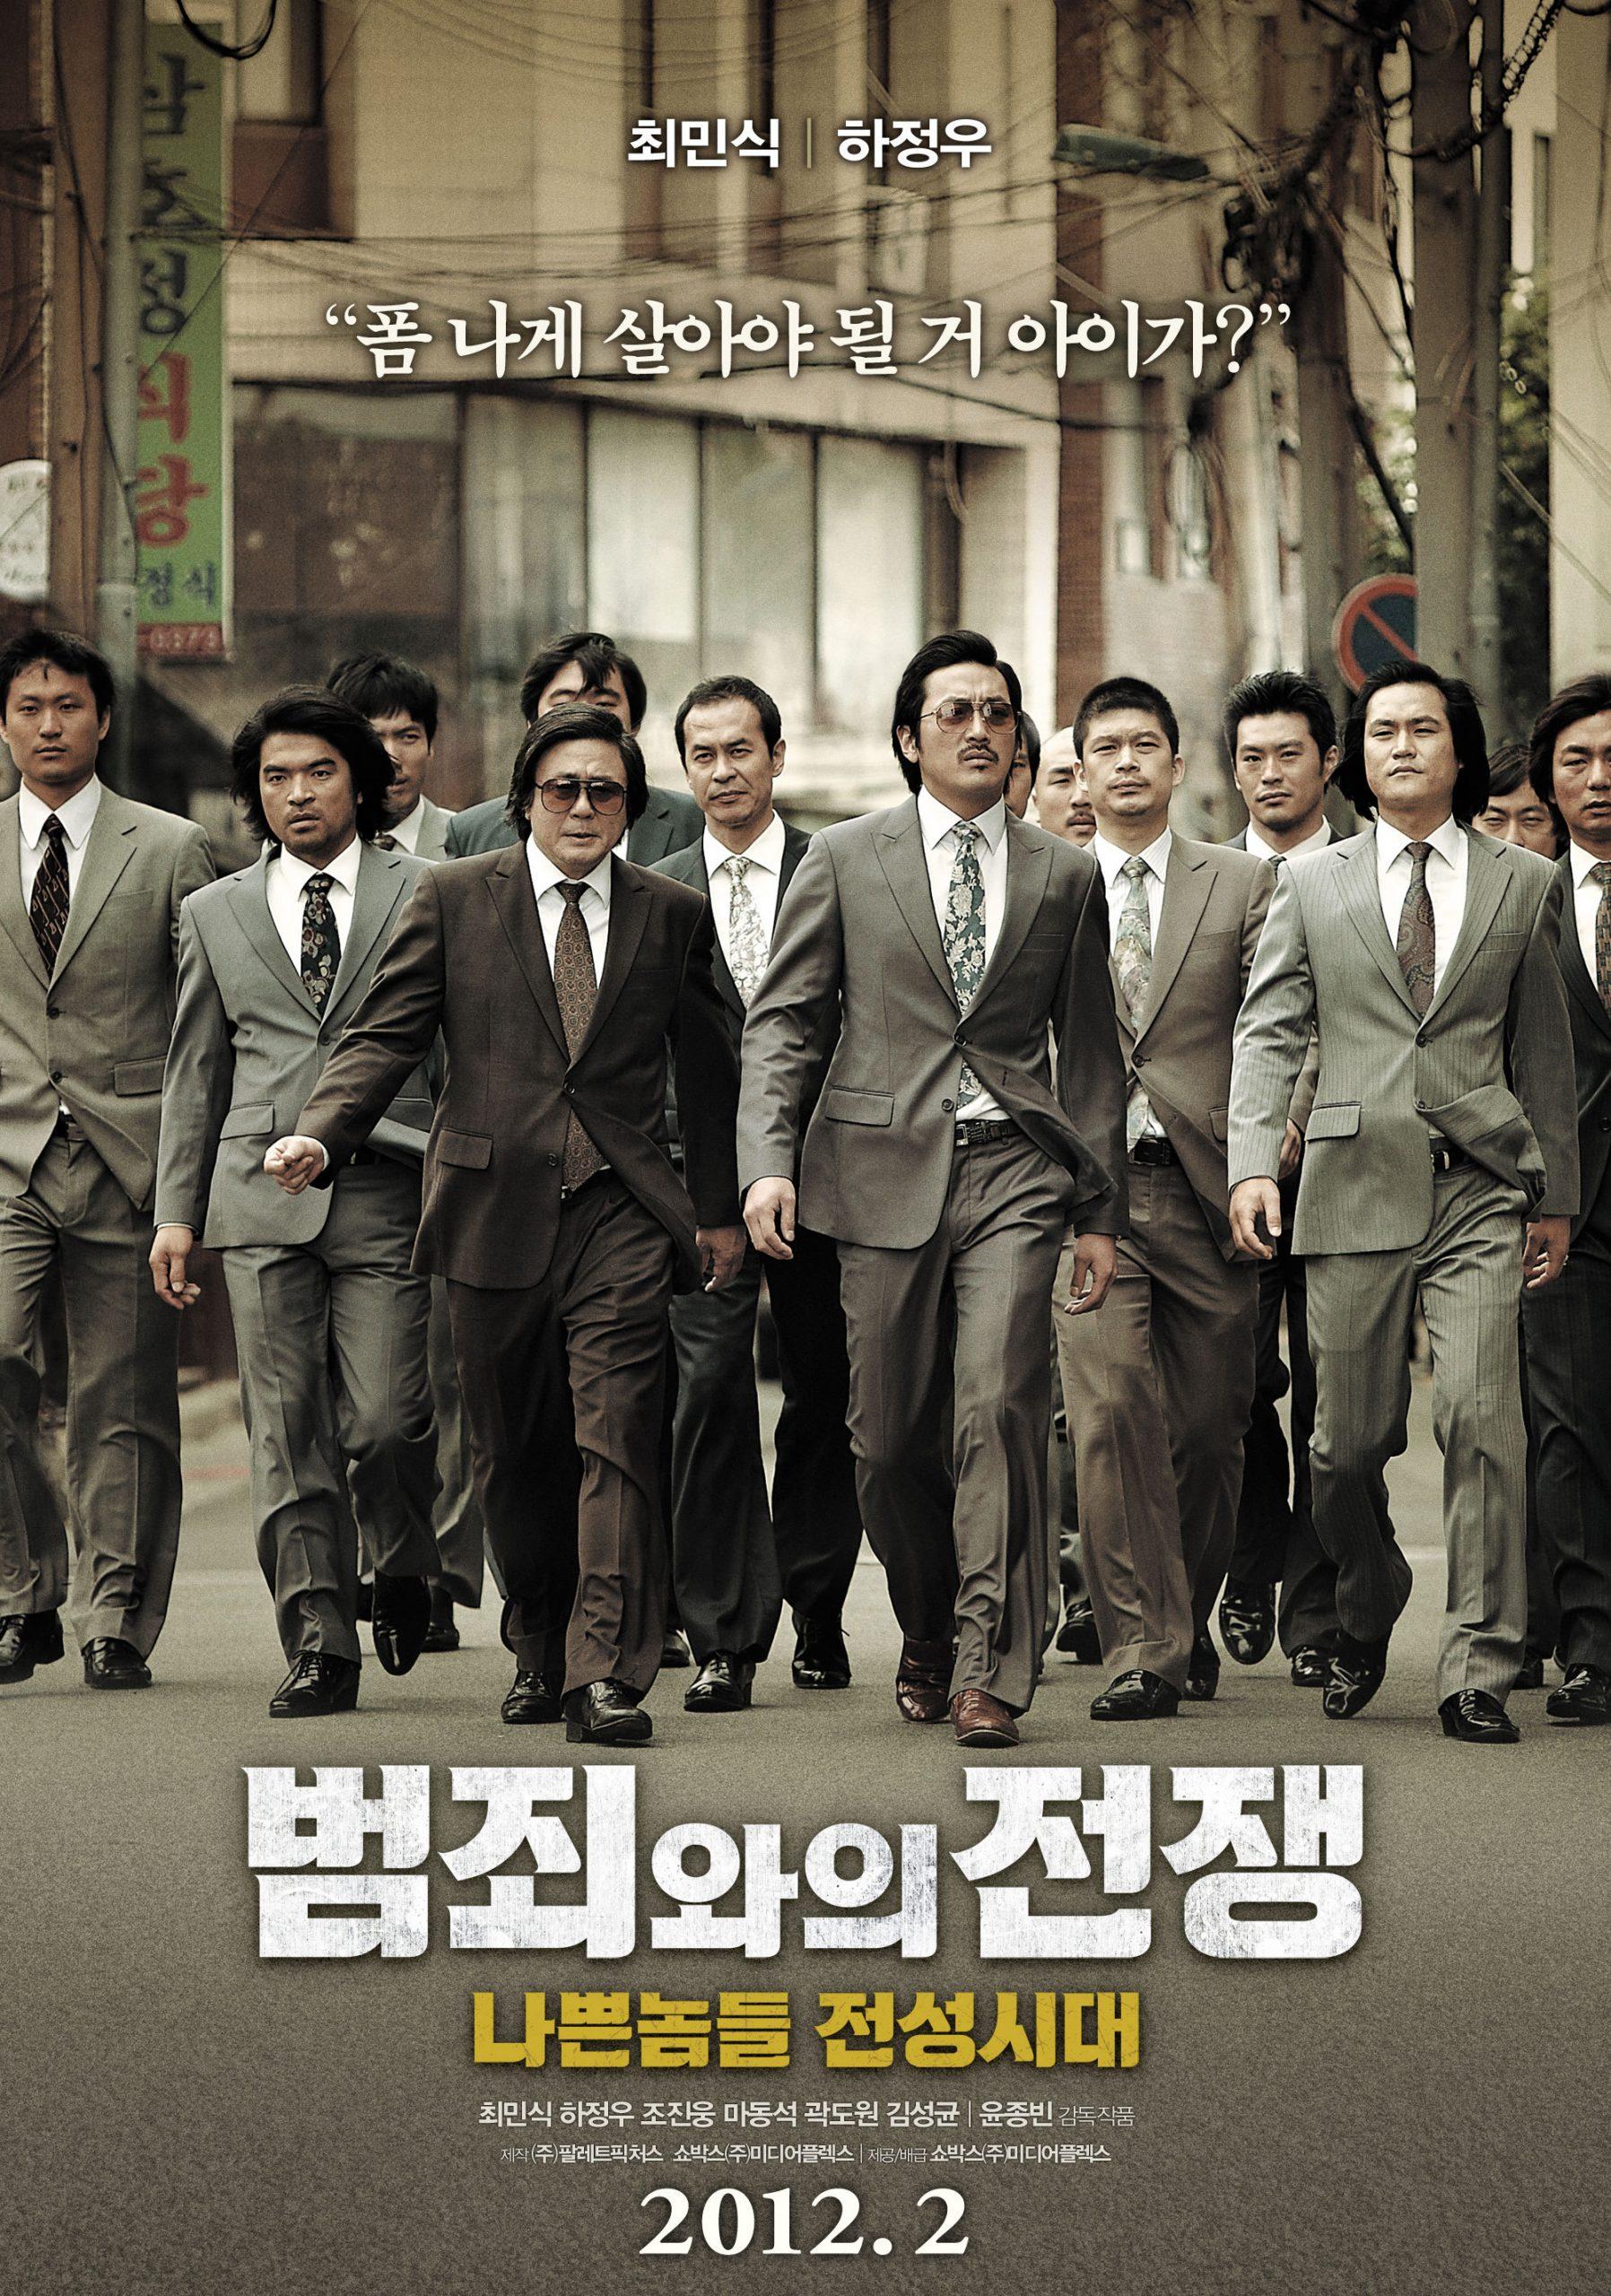 30 phim mafia Hàn Quốc kinh điển hay nhất của thế kỷ 21 - Phim Mafia Hàn Quốc: Với 30 tác phẩm điện ảnh đình đám, Phim Mafia Hàn Quốc sẽ mang bạn đến một thế giới tội phạm thực sự đầy bí ẩn và kịch tình. Chắc chắn bạn sẽ không thể rời mắt khỏi màn hình vì những câu chuyện kịch tính và những nhân vật đầy màu sắc. Hãy khám phá và cảm nhận sự khác biệt của Mafia Hàn Quốc!